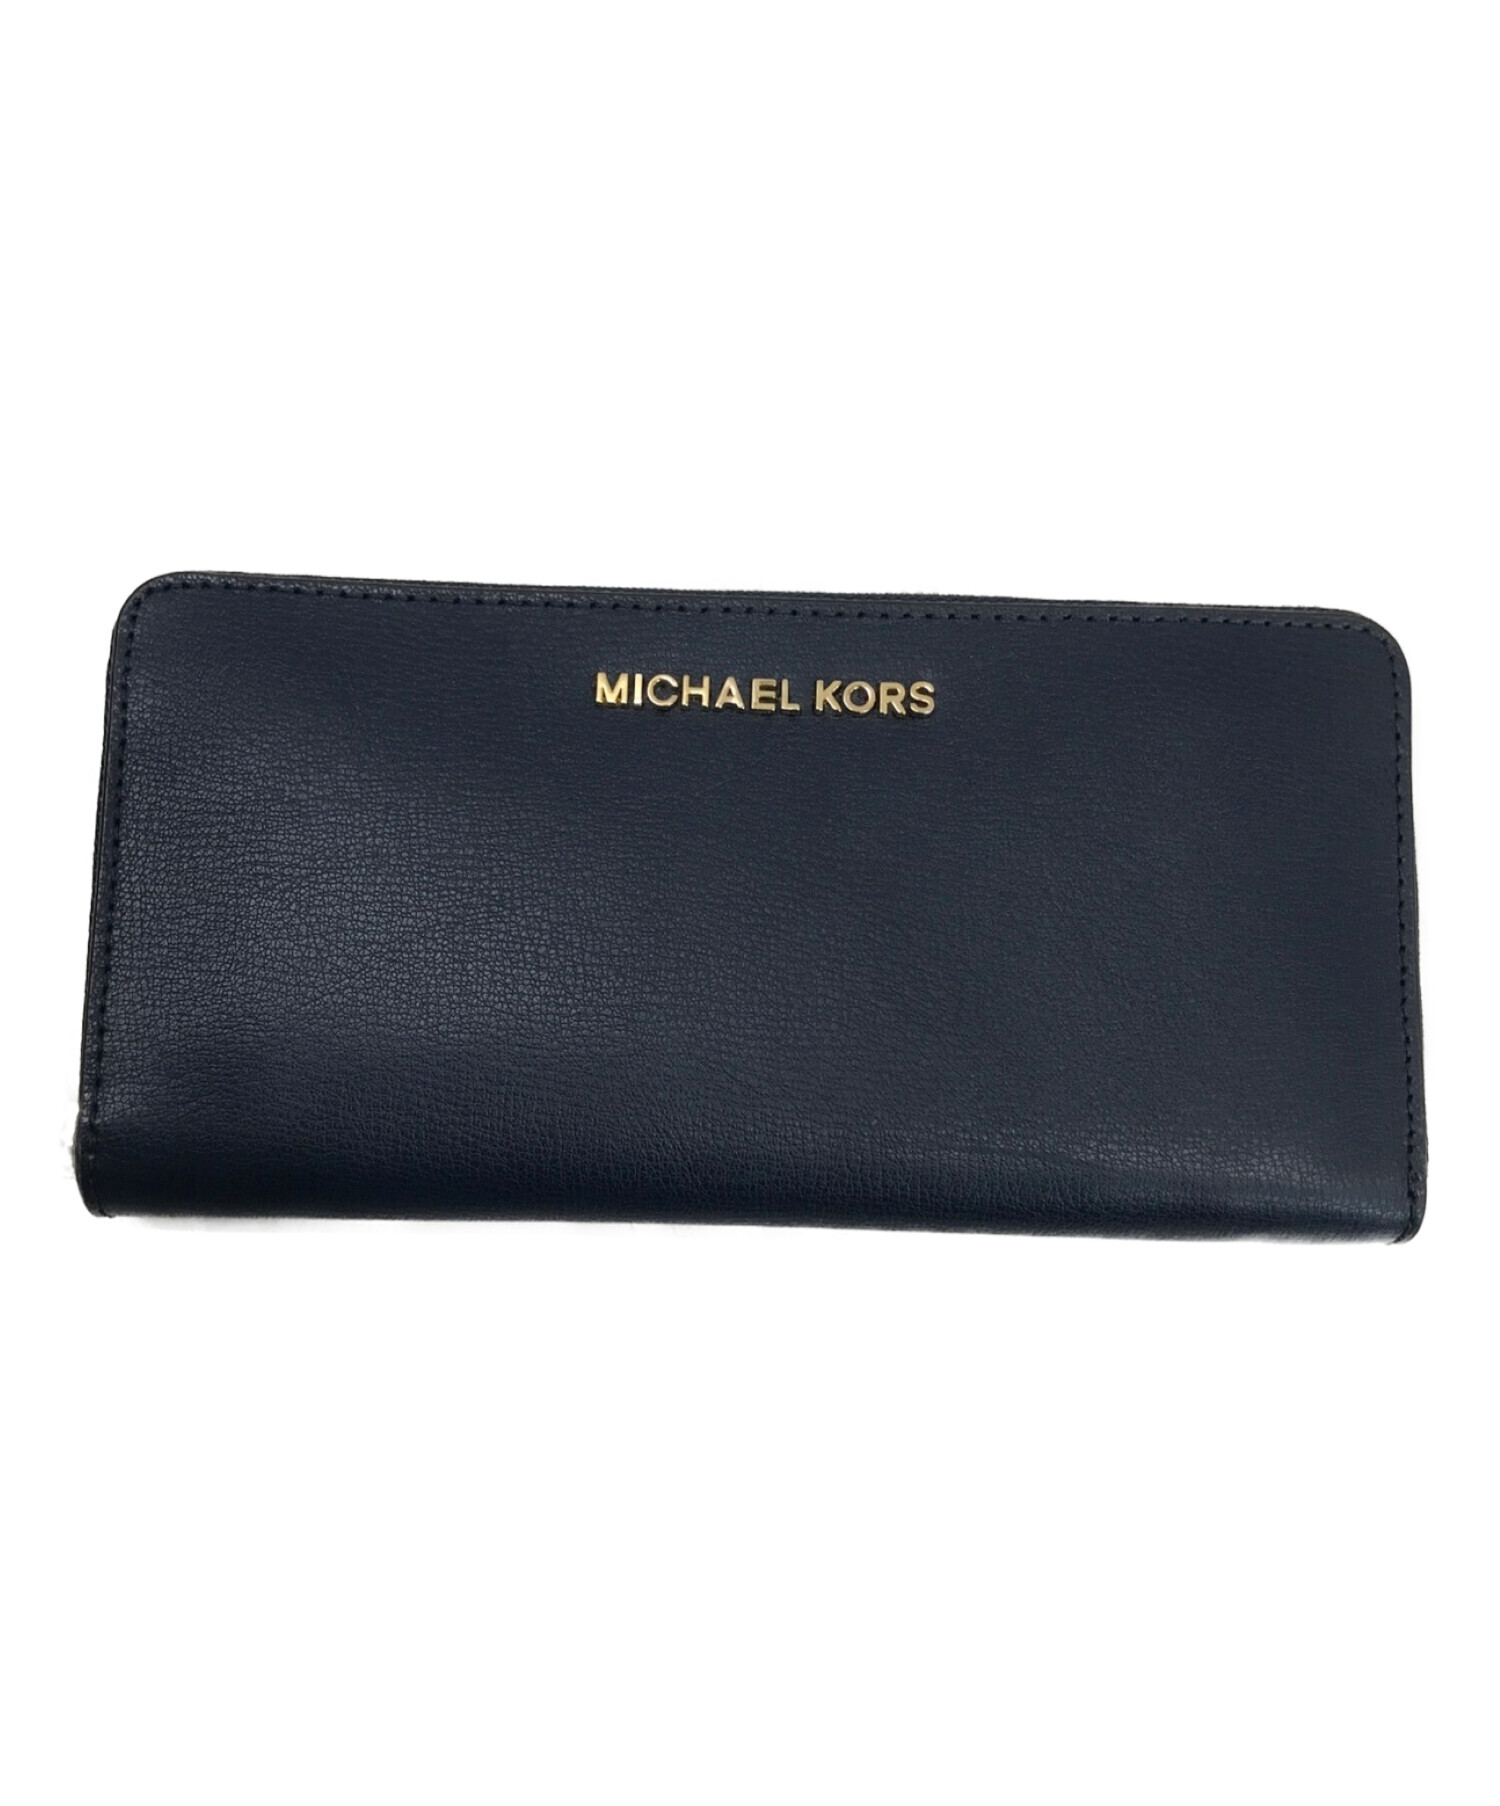 マイケルコース 長財布 ブランドのギフト - 長財布